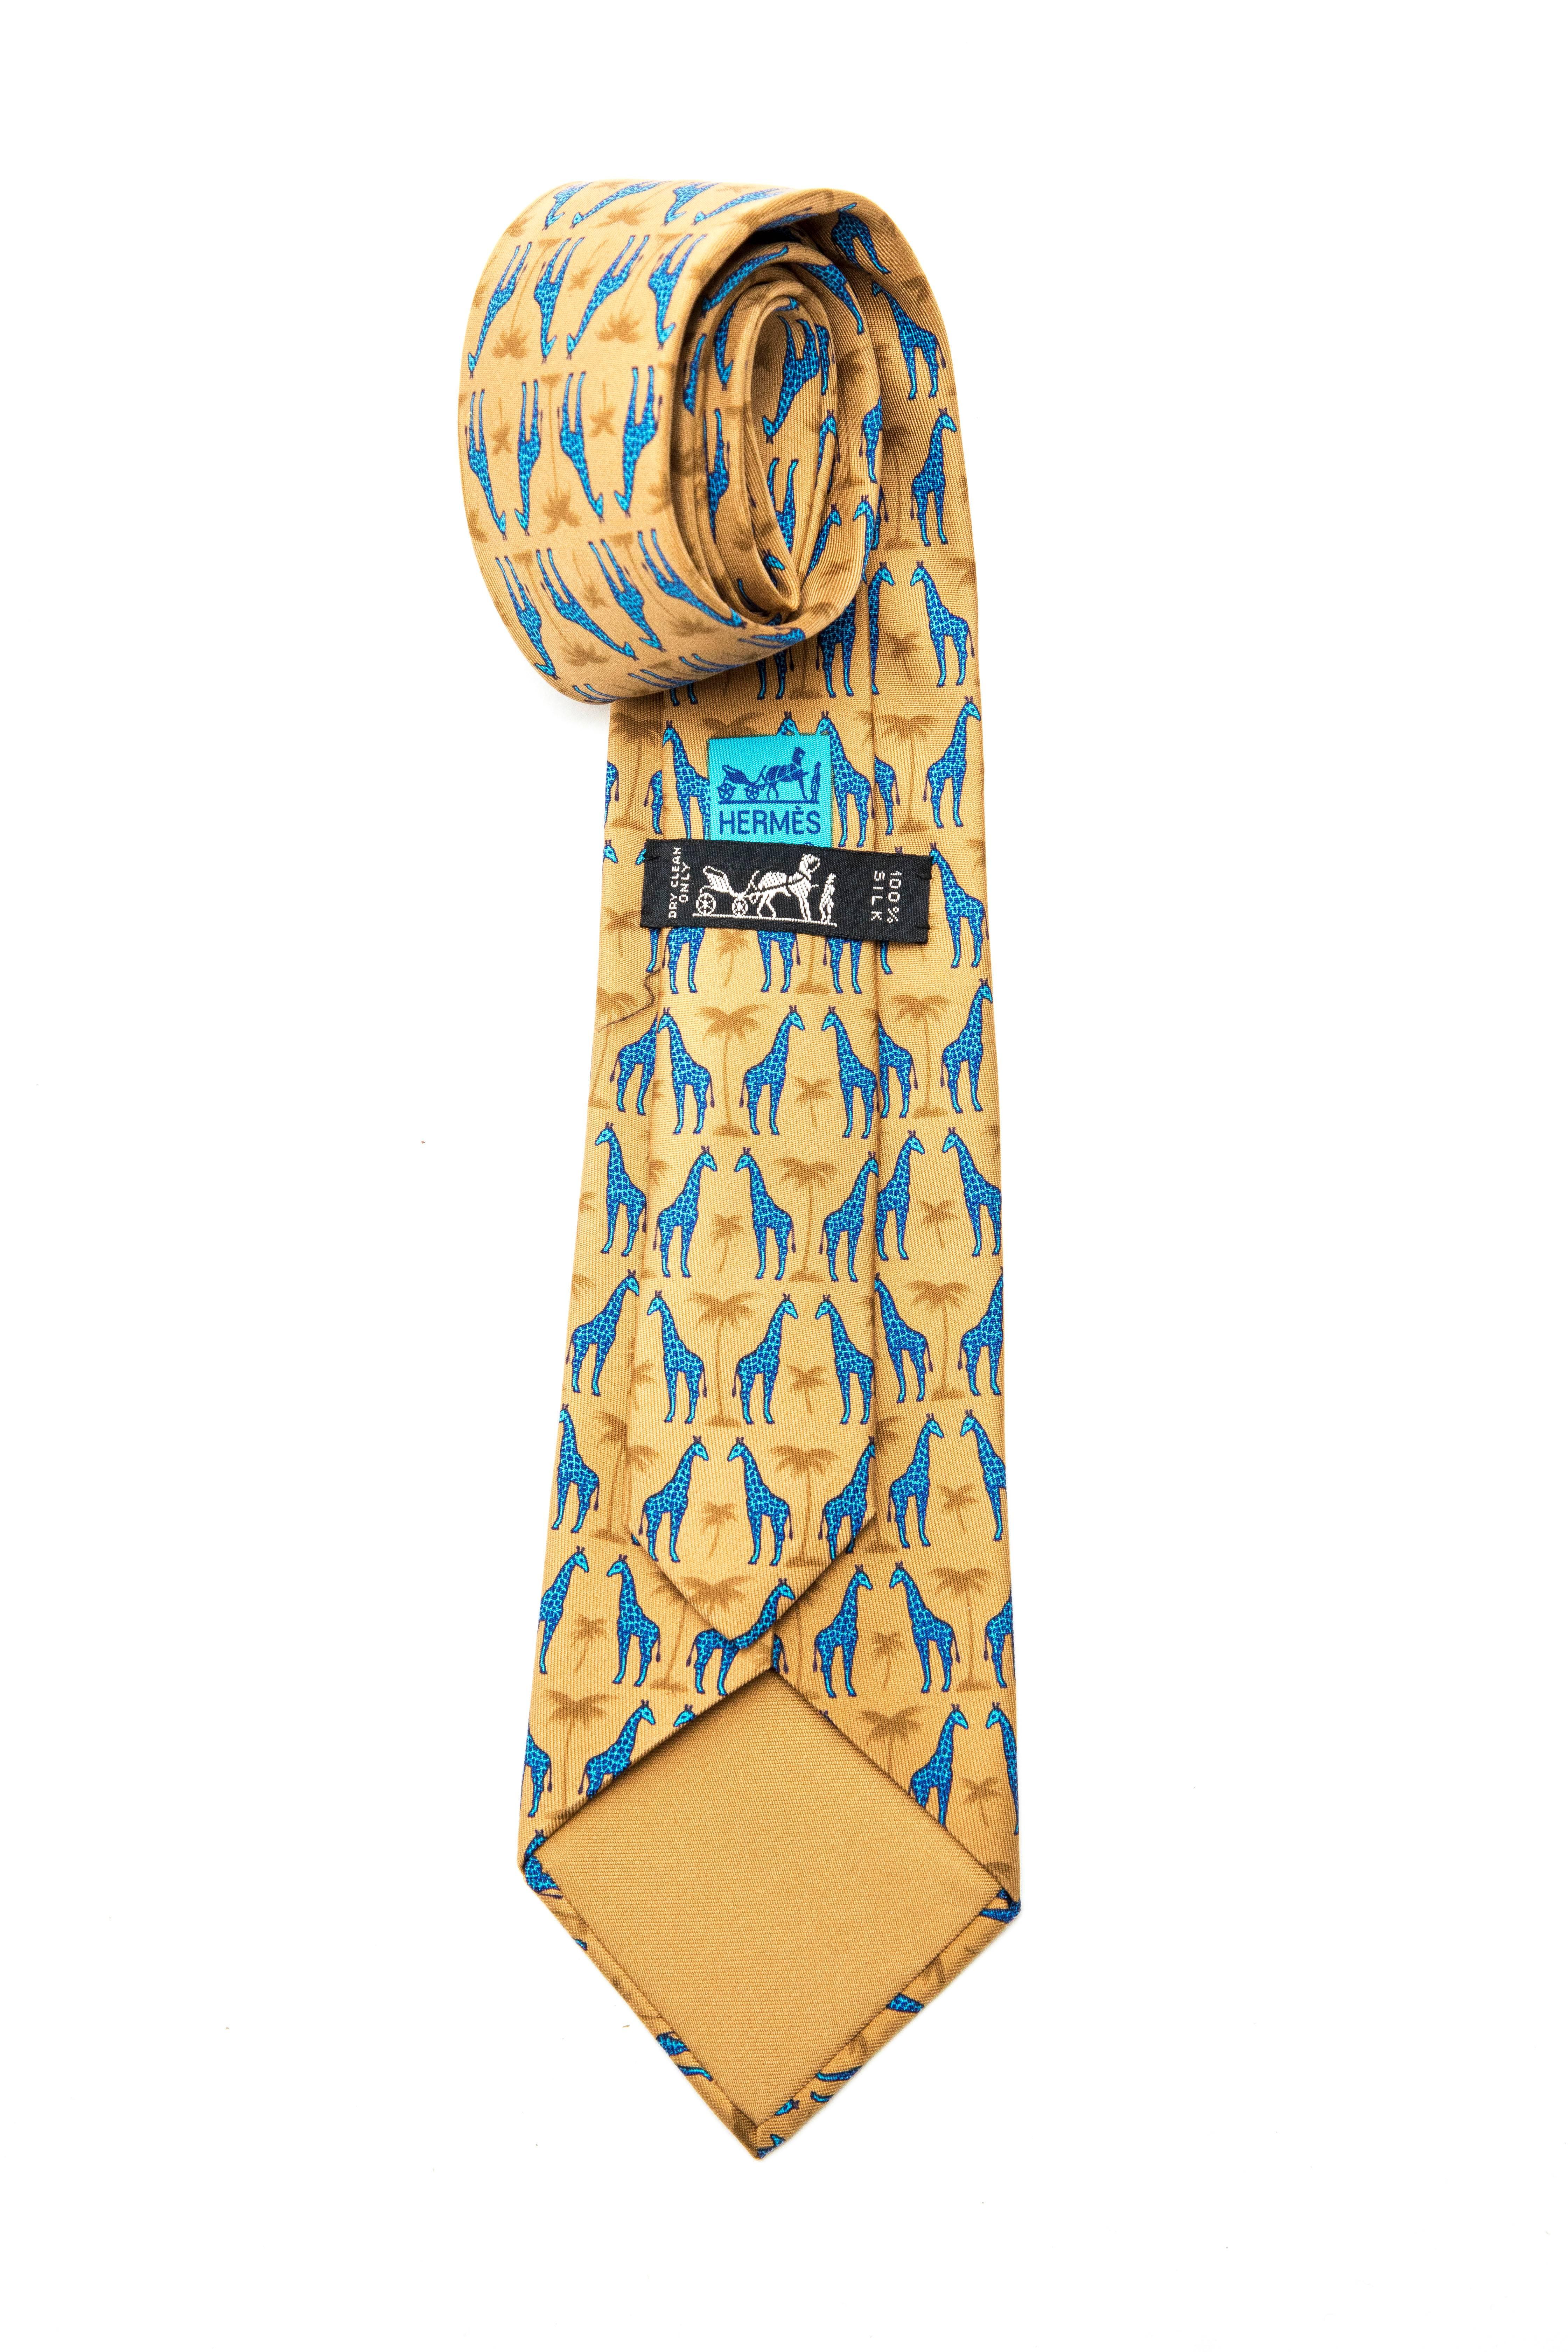 Hermes, Circa 1990's silk printed tie.

Length: 58, Width 3.5
